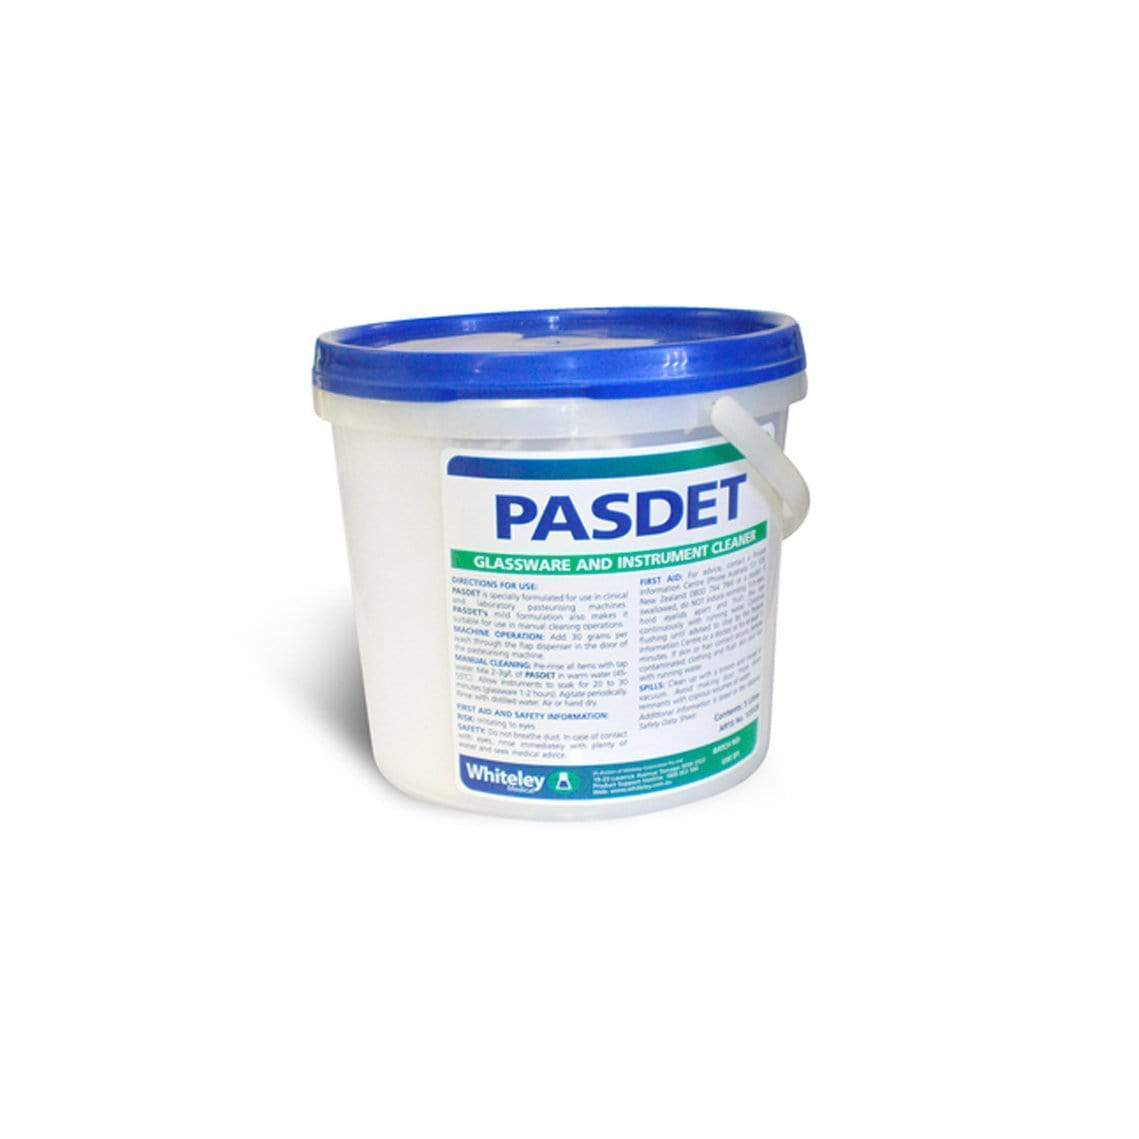 Pasdet Machine Instrument Cleaner Powder